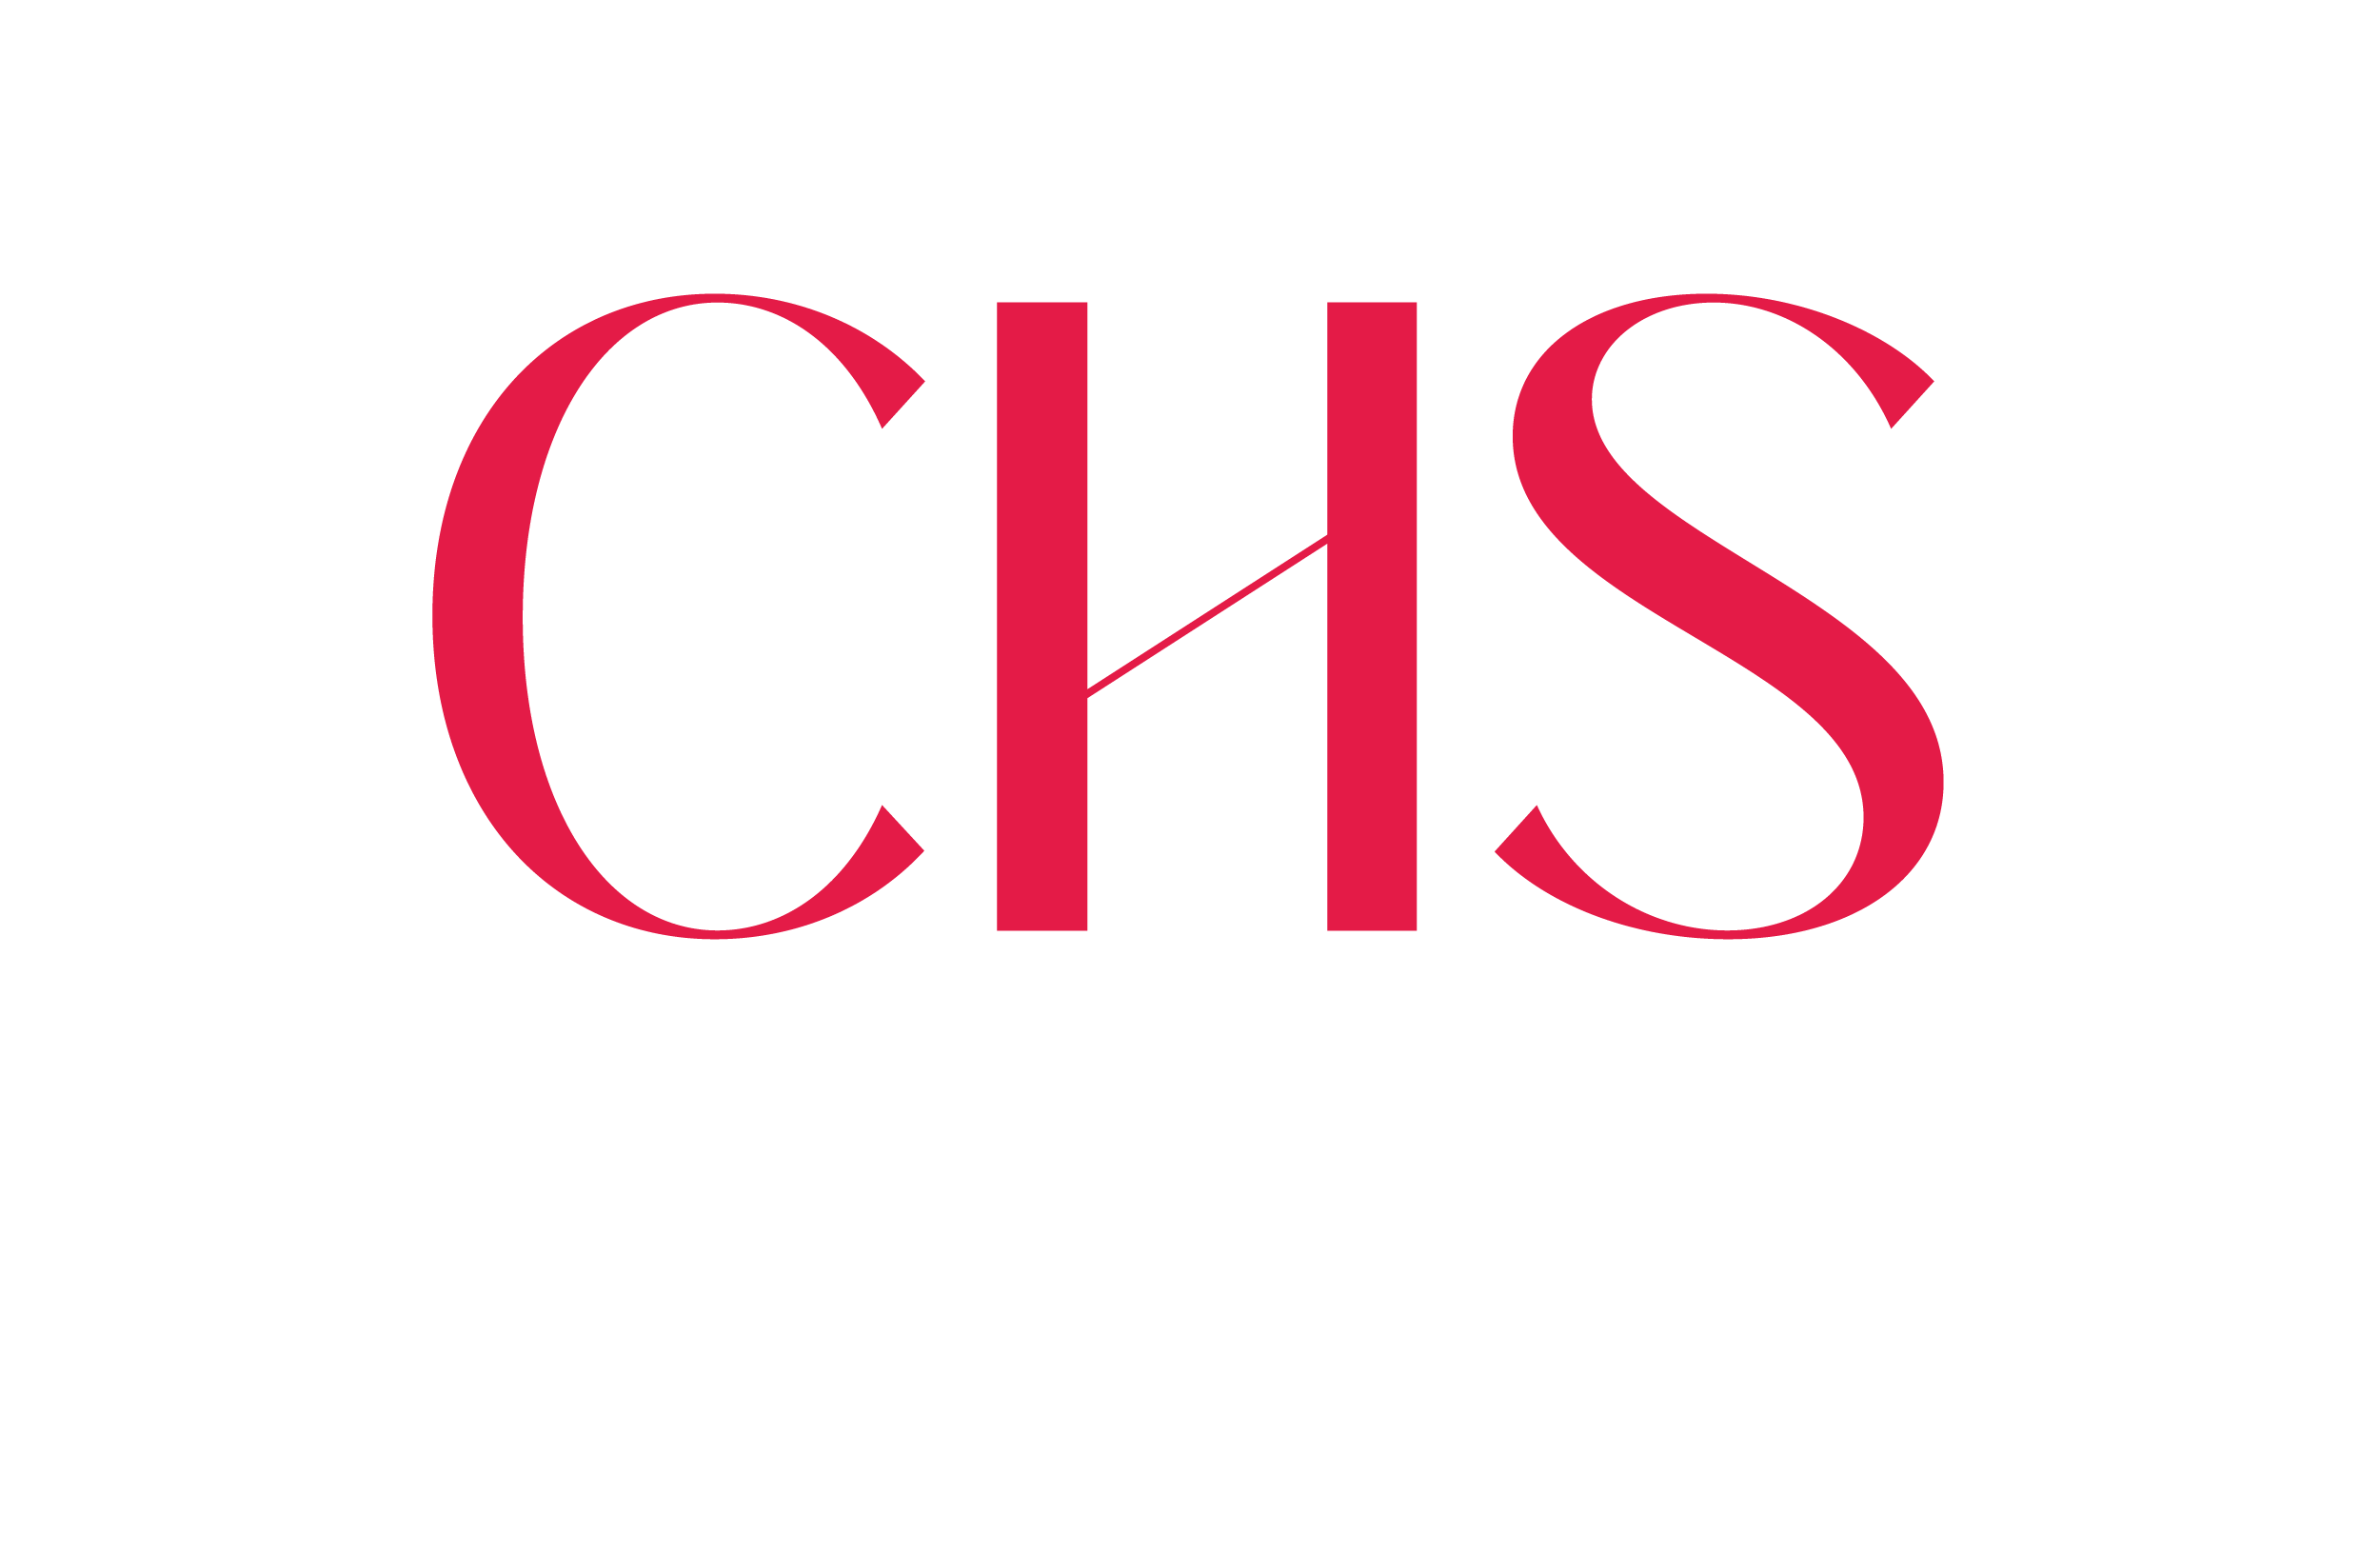 CHS Consult